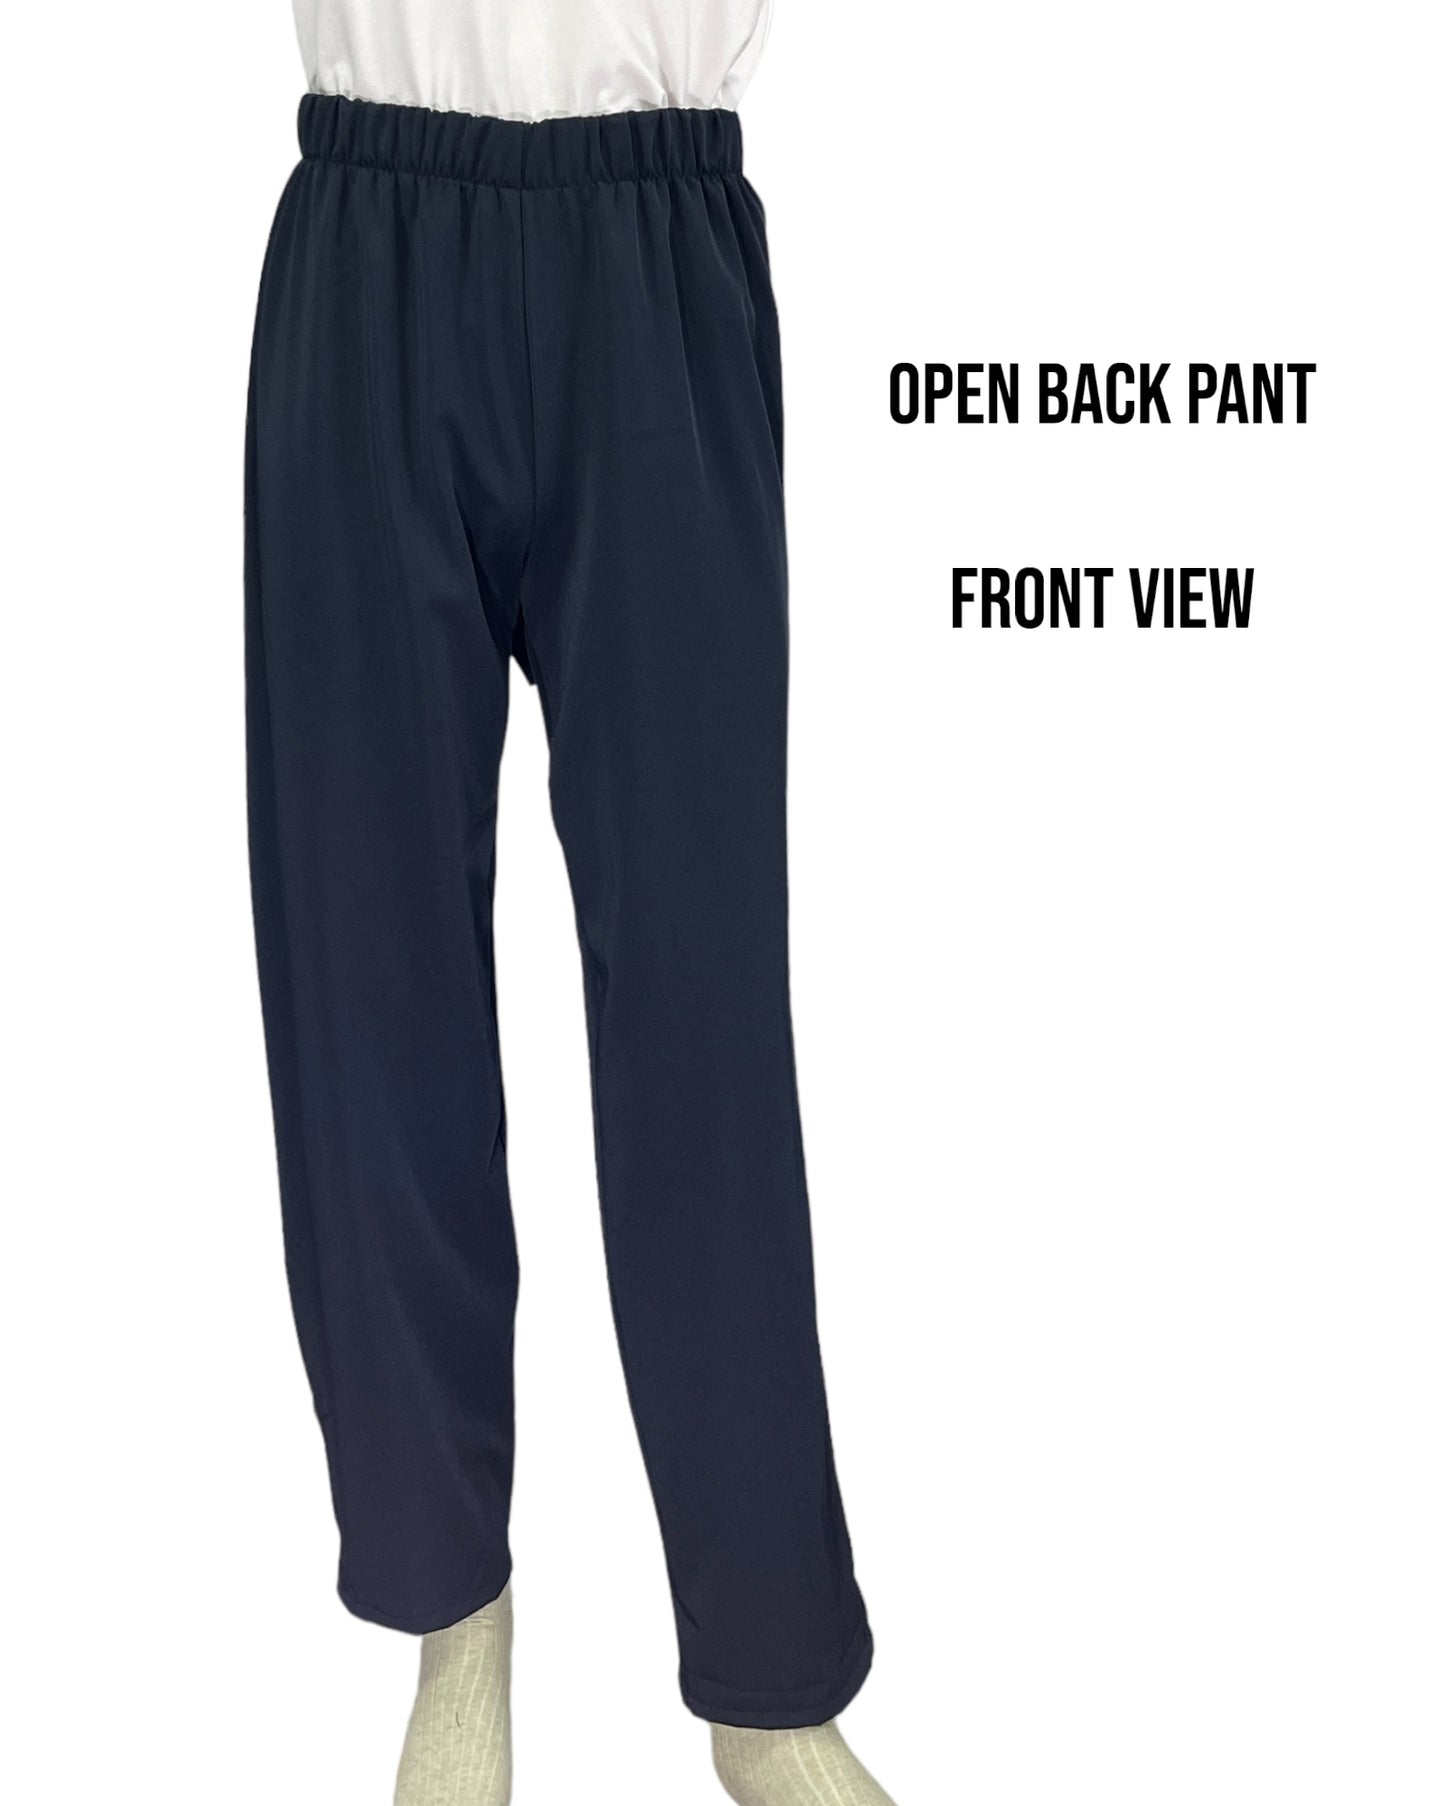 Adaptive Open Back Cotton Knit Pants